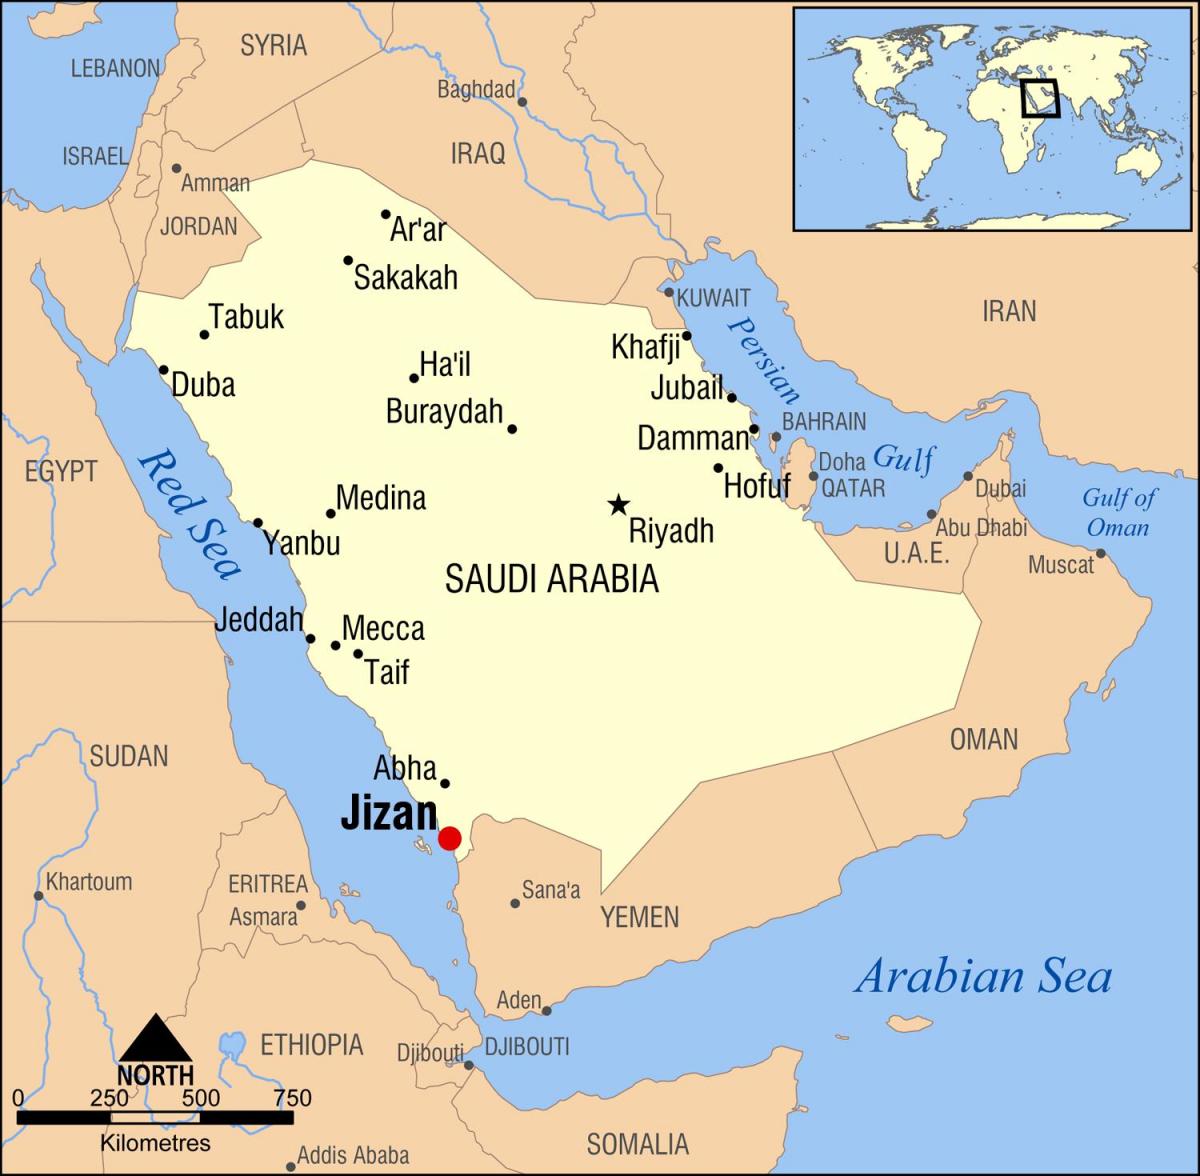 jizan KSA რუკა